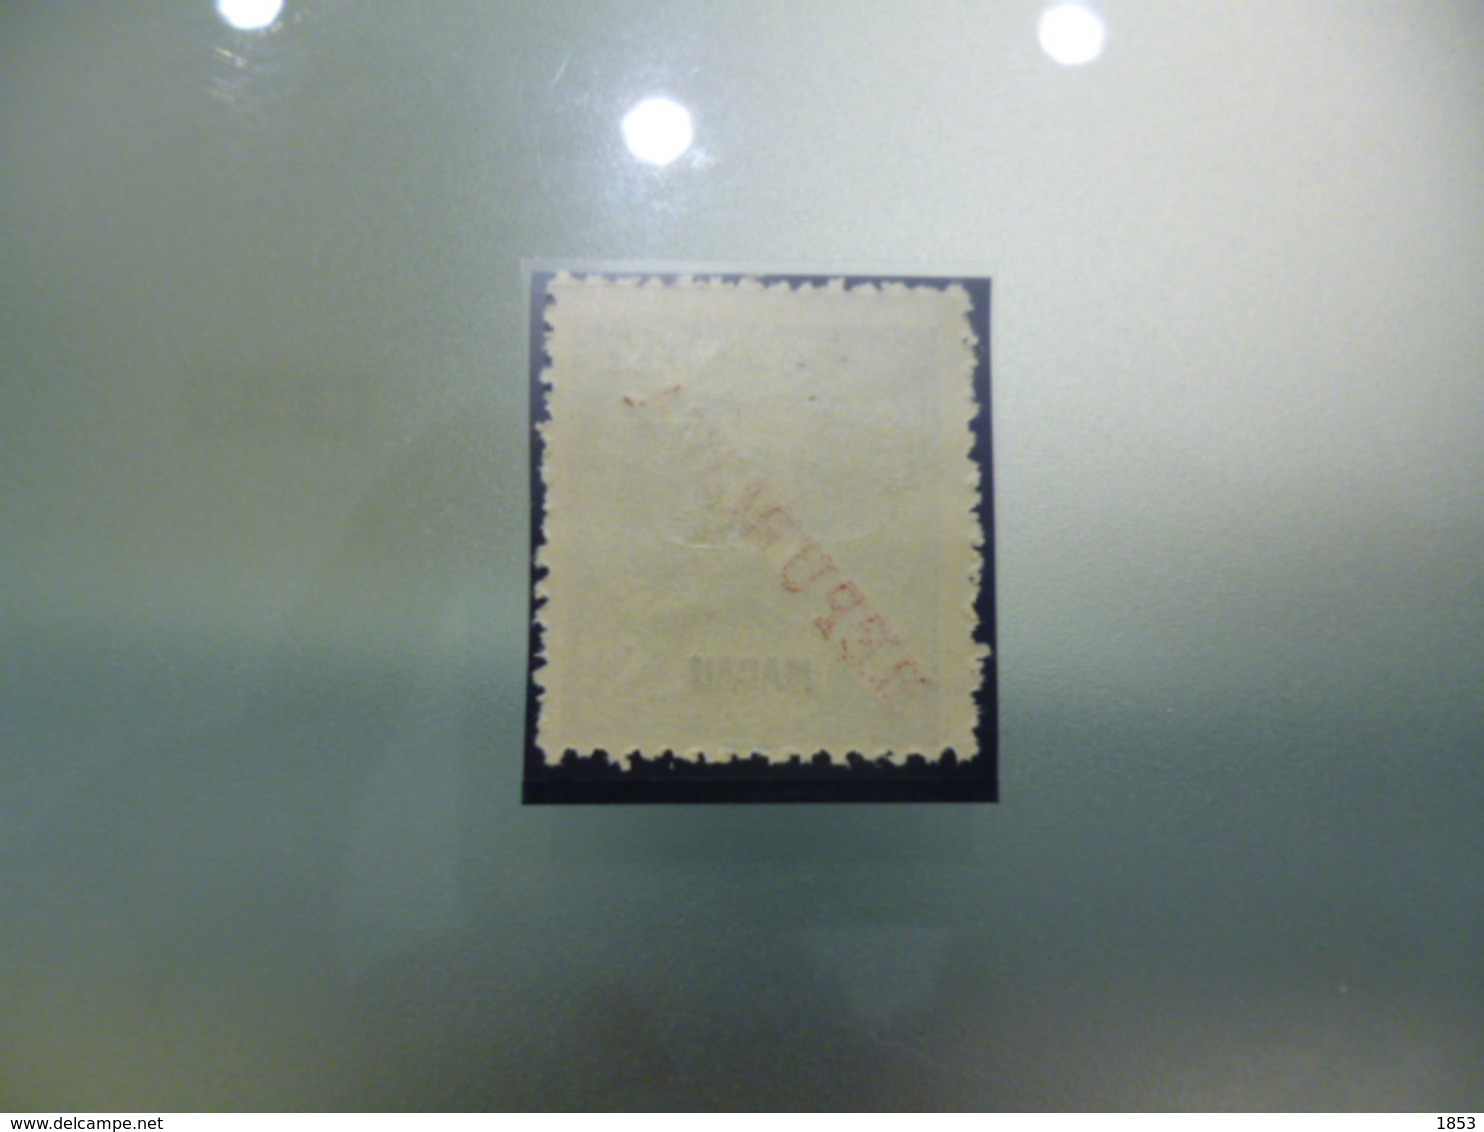 MACAU - 1913 - SOBRECARGA LOCAL "REPUBLICA" - Unused Stamps